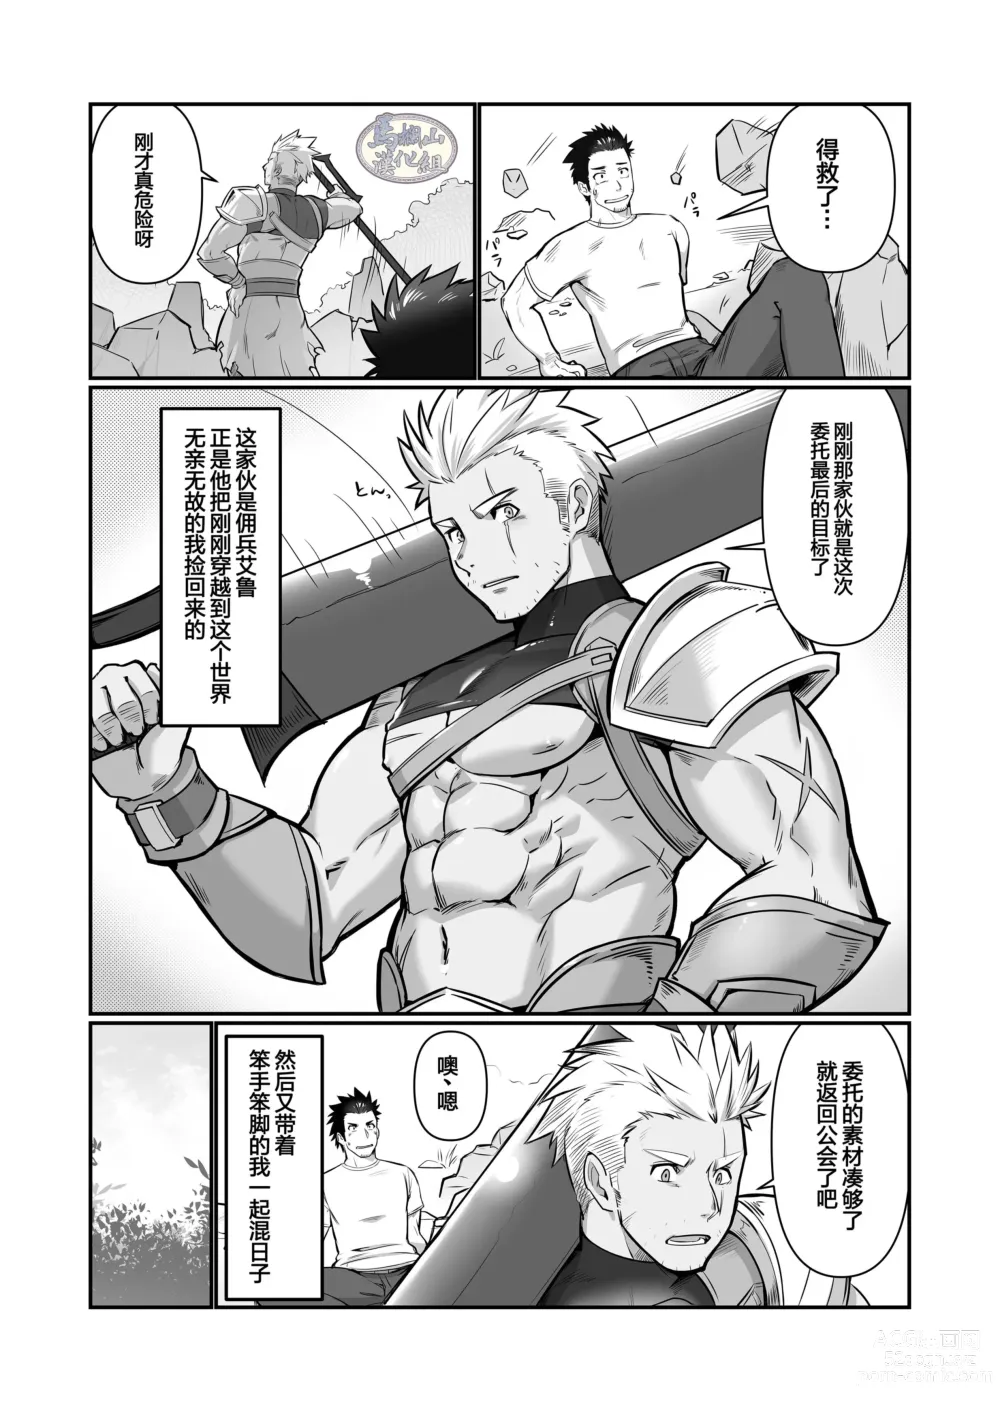 Page 5 of doujinshi 关于我在转生之后身边全是肌肉男的奇闻轶事2